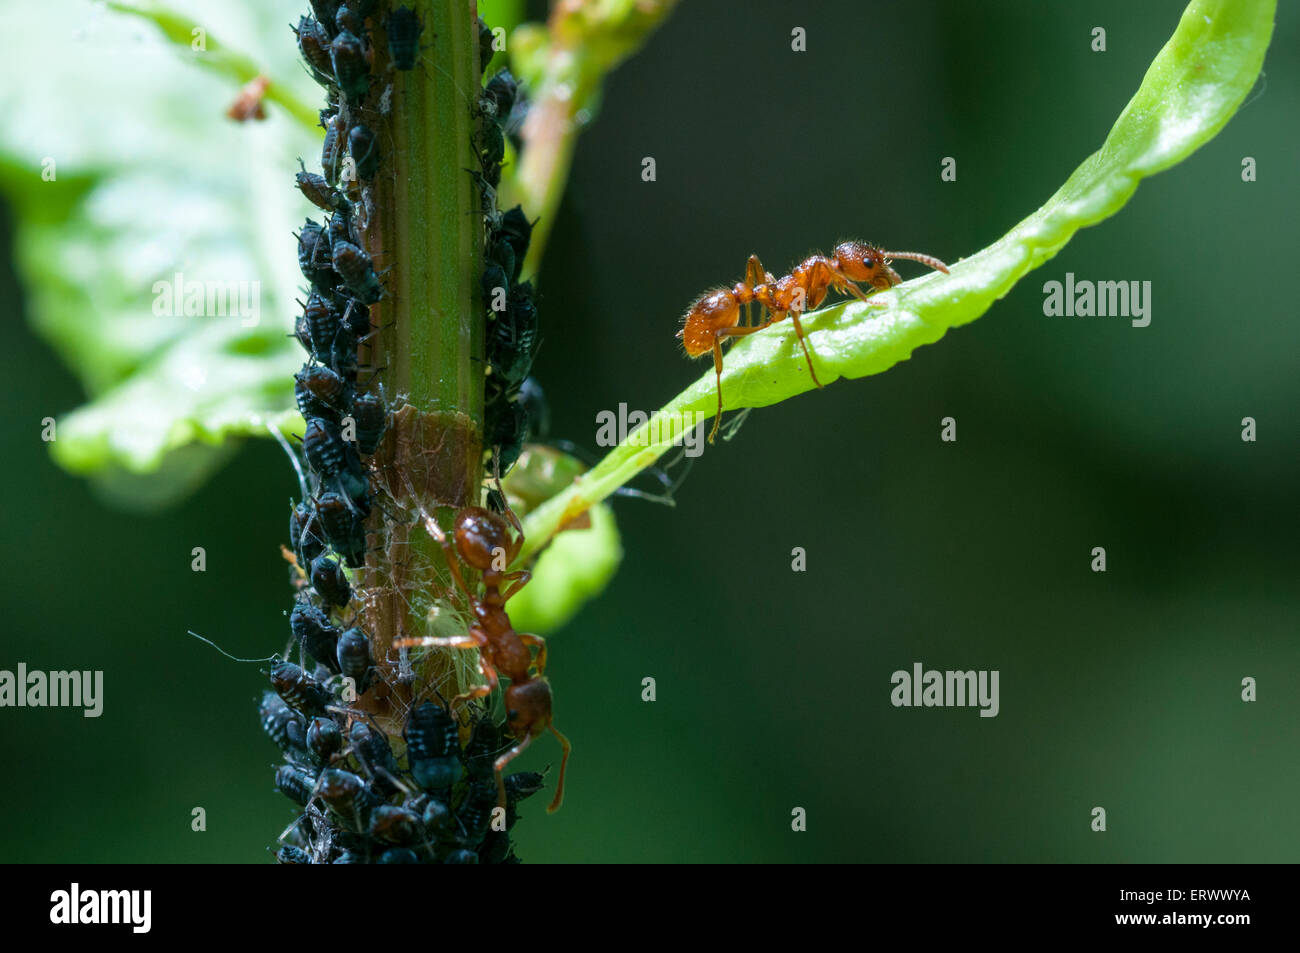 Rote Ameisen bewacht und "Melken" Blattläuse um den Honig wegen zu sammeln.  Ameisen erhalten Essen und die Blattläuse Schutz Stockfoto